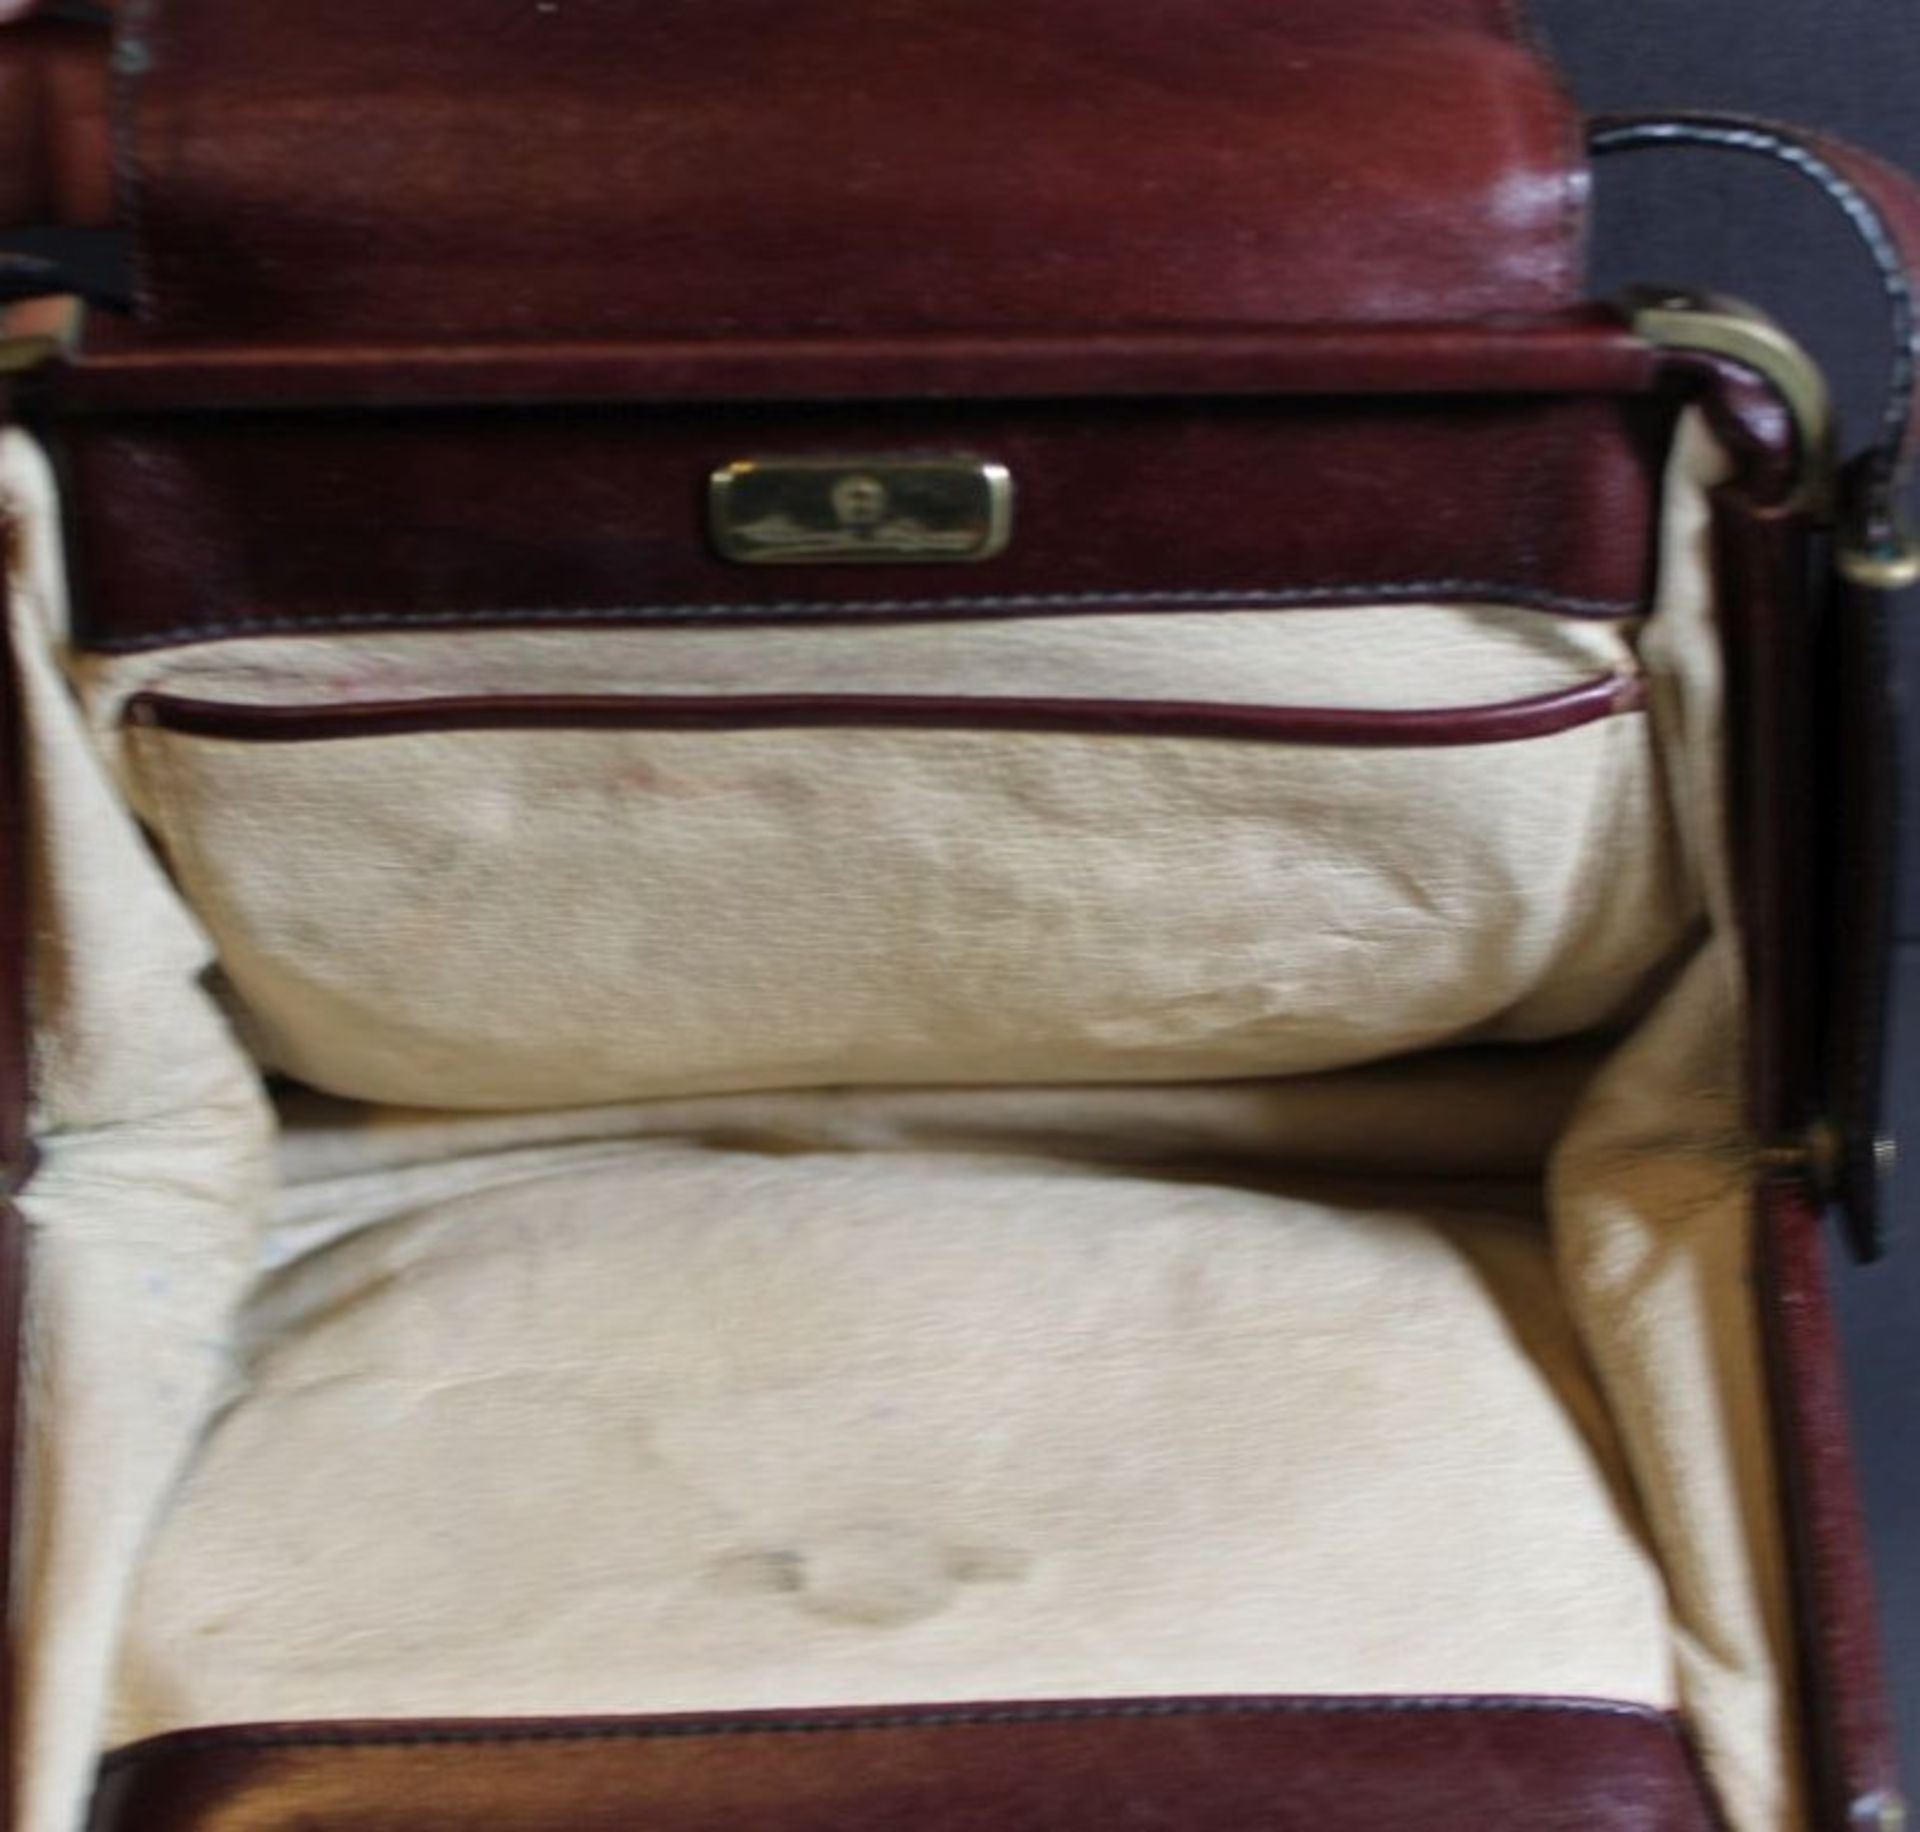 Handtasche "Aigner" Leder, rot, Gebrauchsspuren, 16x20 cm - Bild 3 aus 3